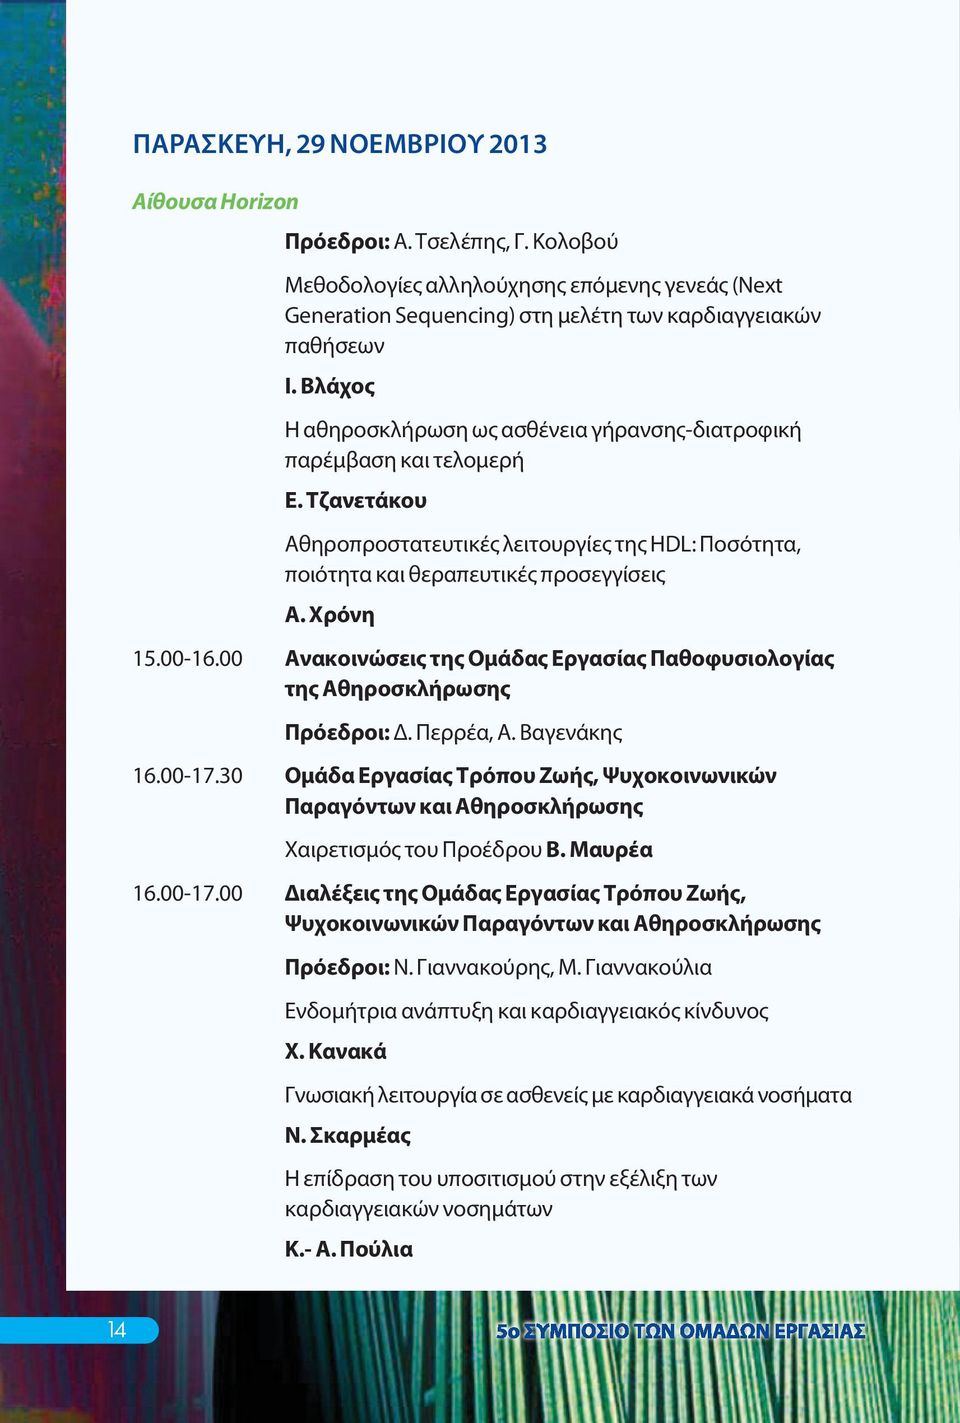 00 Ανακοινώσεις της Ομάδας Εργασίας Παθοφυσιολογίας της Αθηροσκλήρωσης Πρόεδροι: Δ. Περρέα, Α. Βαγενάκης 16.00-17.